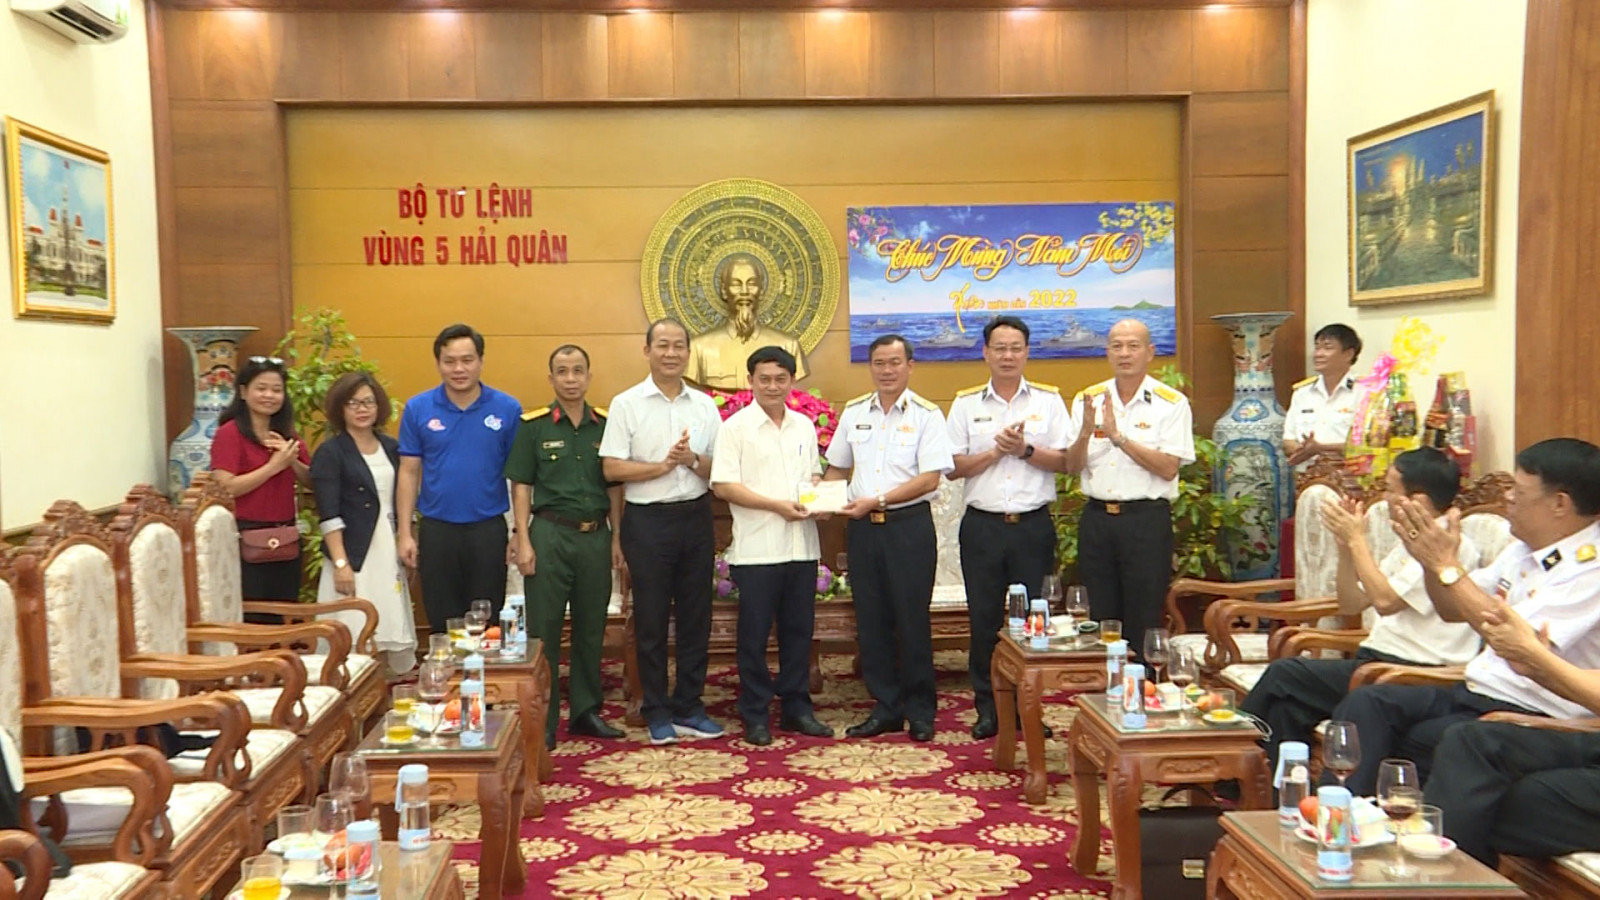 省领导探望海军第五区司令部并向干部战士们拜年 Bao Binh Dương Online